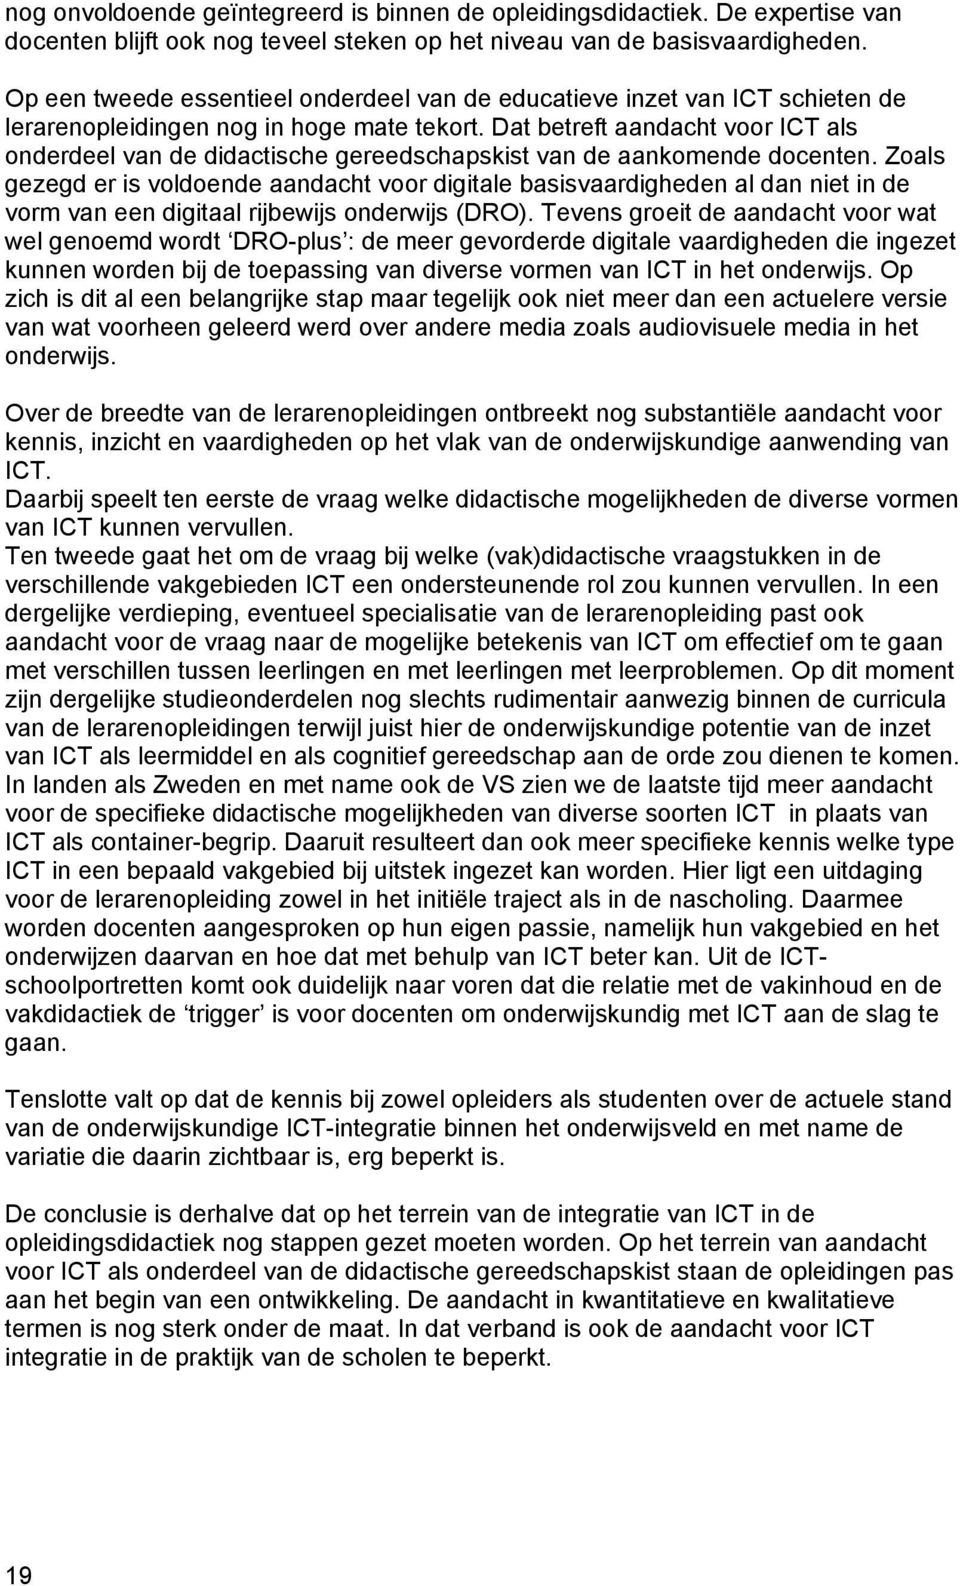 Dat betreft aandacht voor ICT als onderdeel van de didactische gereedschapskist van de aankomende docenten.